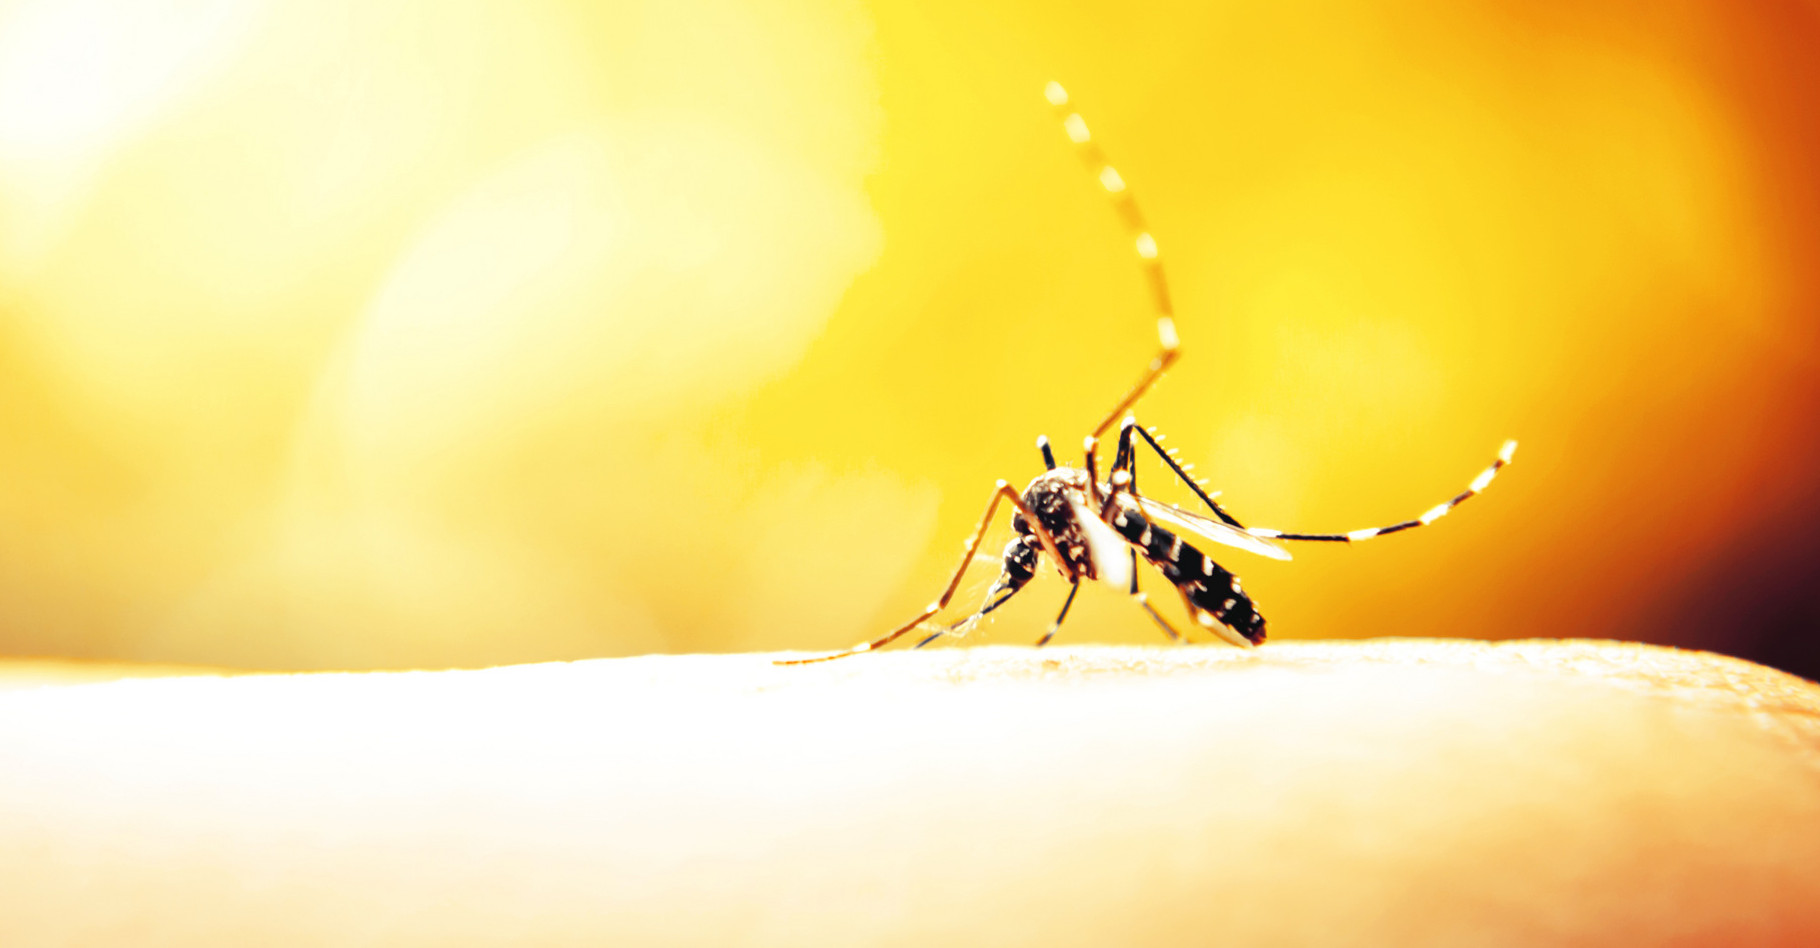 Selon certaines études, les moustiques préféreraient les peaux des femmes et celles plus sucrées. Toutefois, chacun réagit différemment aux piqûres. Cela peut donner l'impression que les moustiques piquent certaines personnes plus que d’autres sans que cela soit forcément le cas. © Apichart Meesri, Shutterstock